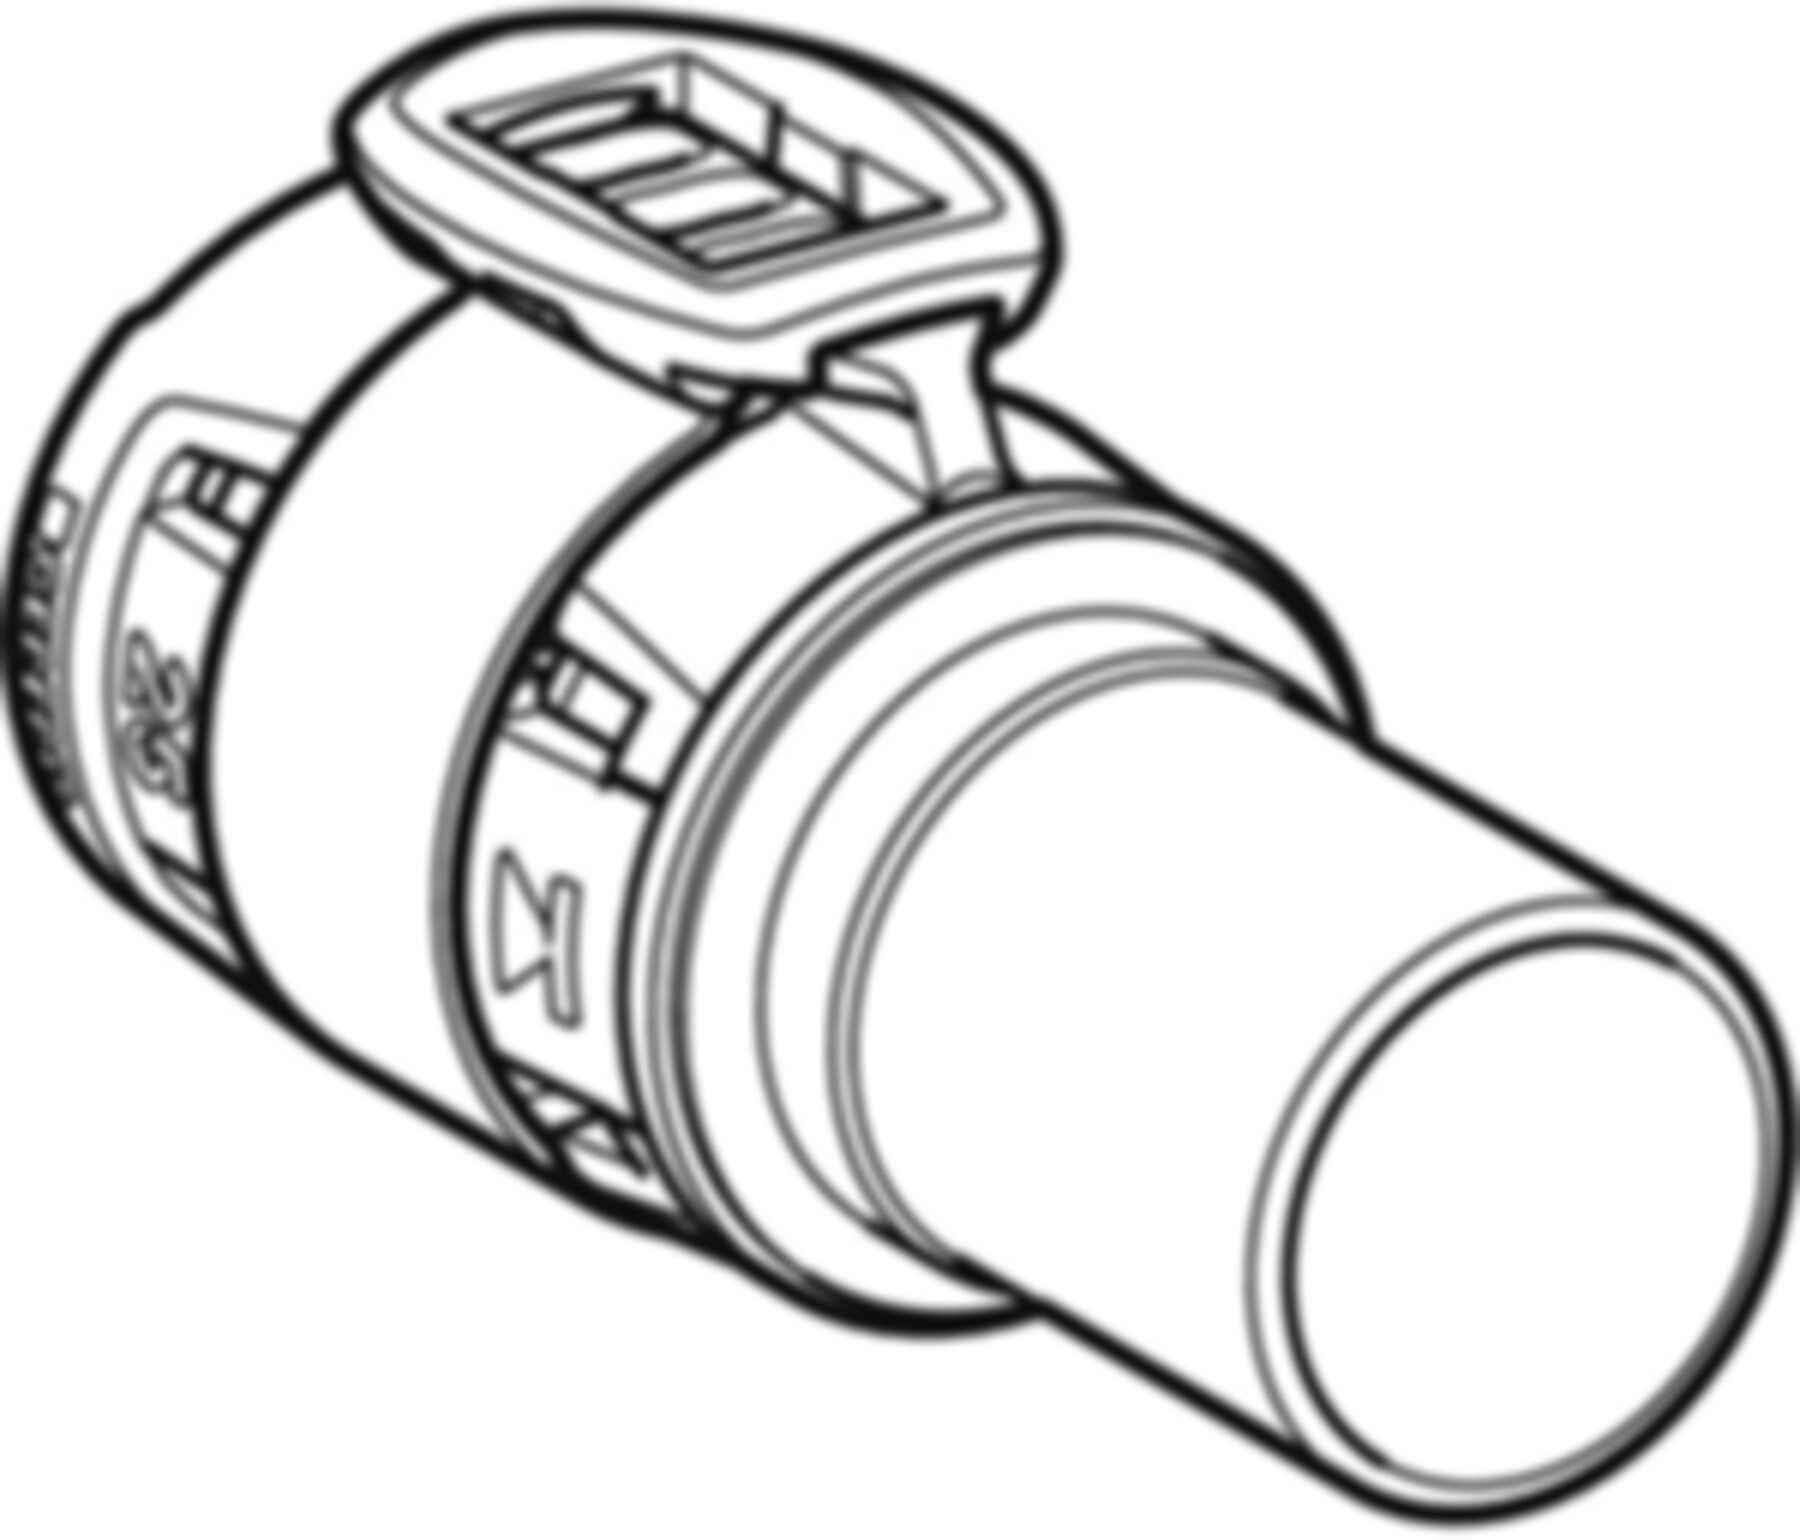 Übergang 20mm-22mm 620.252.00.1 auf Mapress Steckende Edelstahl - Geberit FlowFit-Rohre/Formstücke